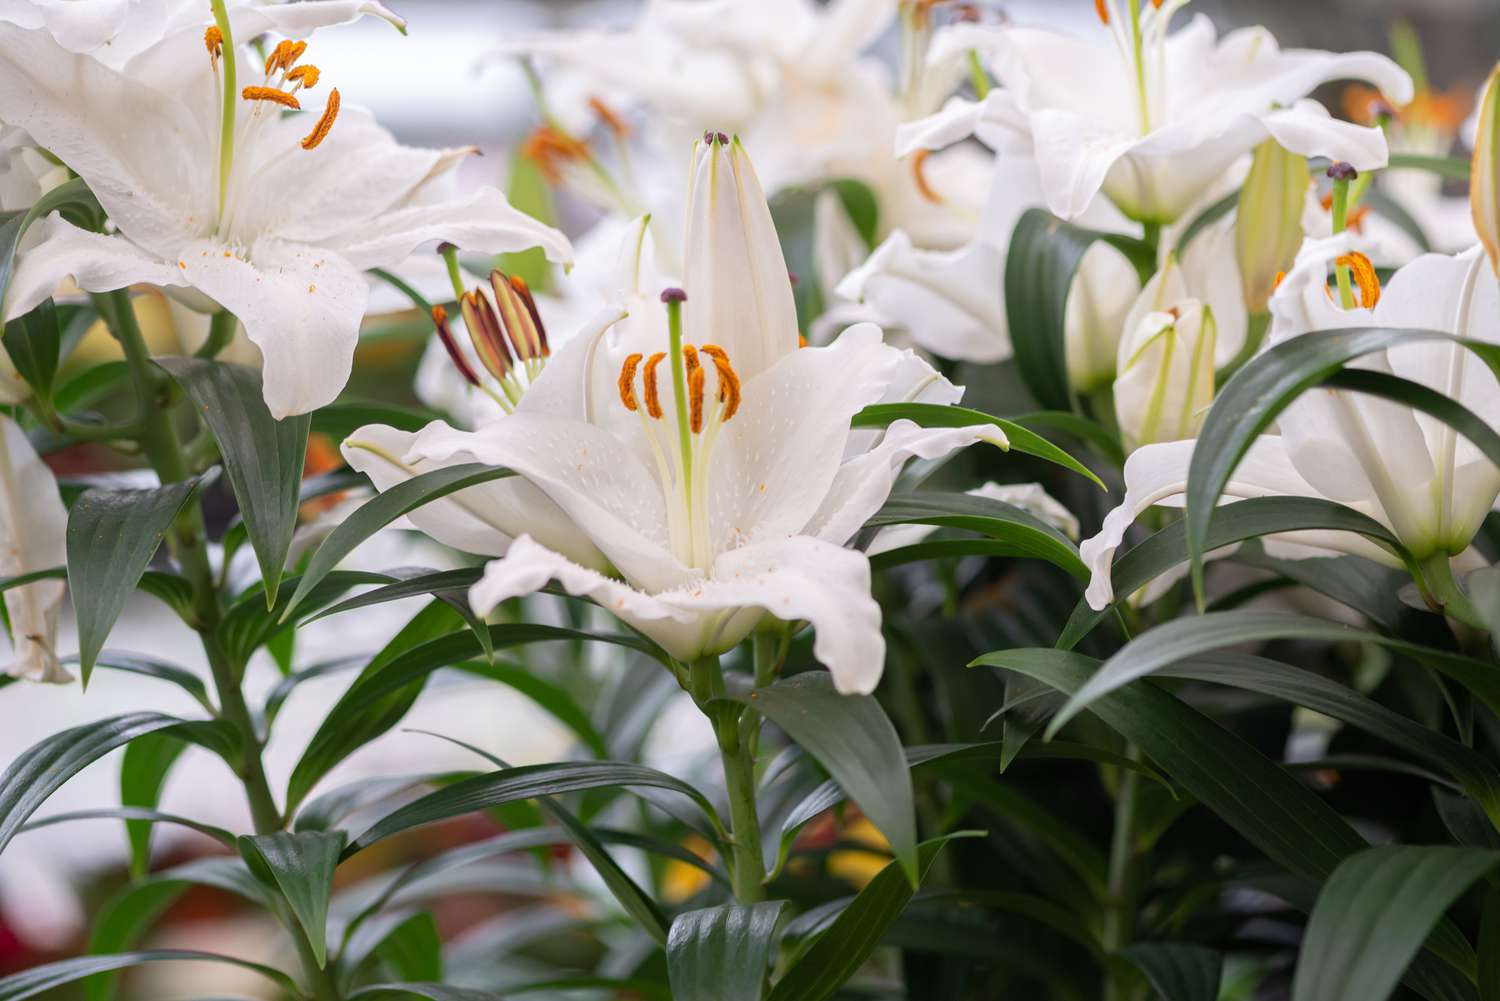 Casa Blanca-Lilie mit großen weißen Blüten mit langen Staubgefäßen in der Mitte